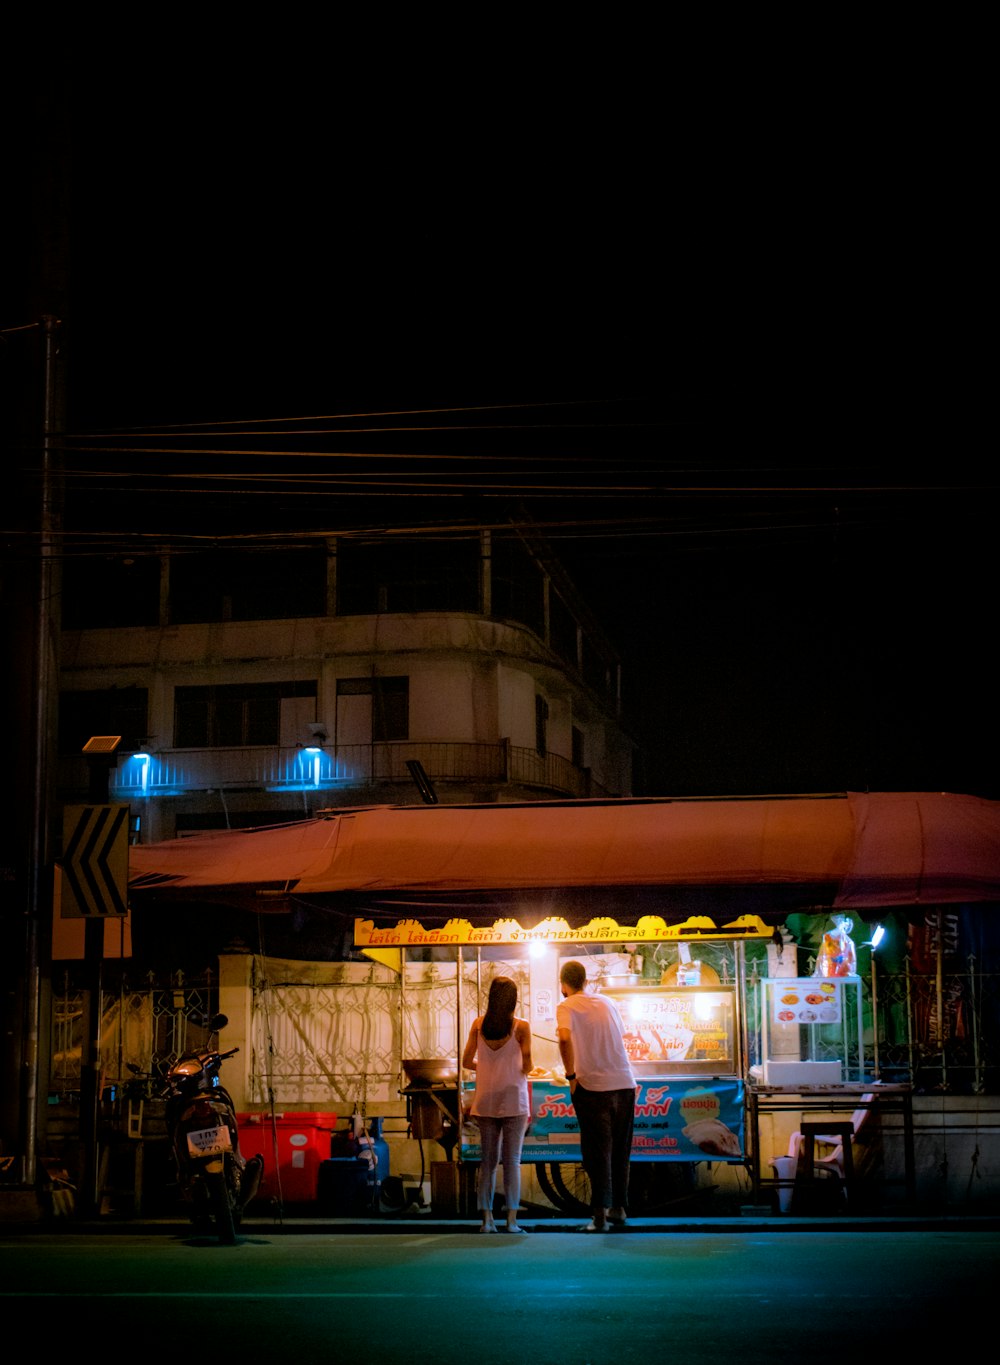 people walking on street during nighttime